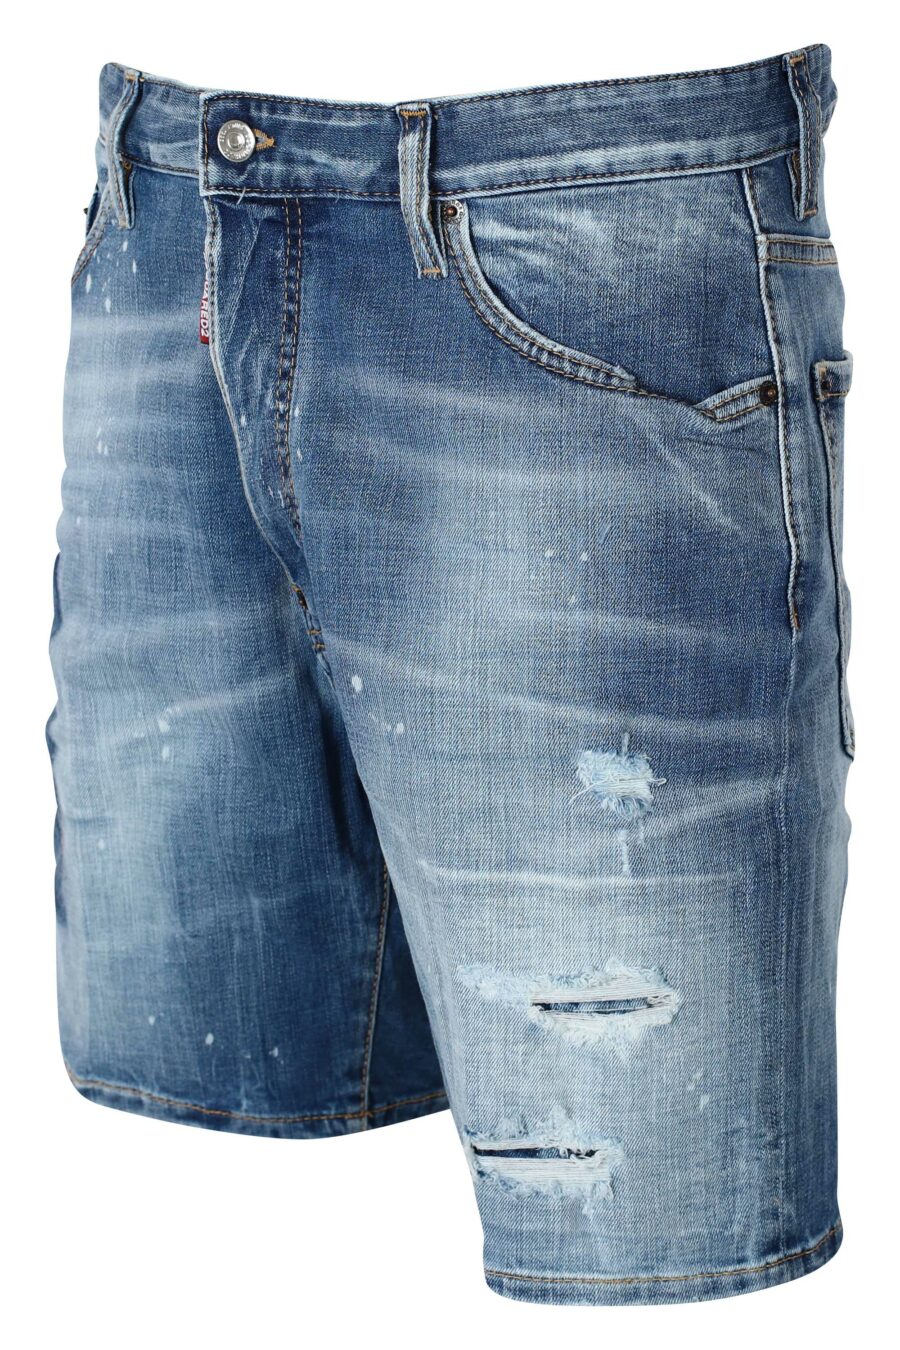 Blaue Denim-Shorts mit Aufnäher und grafischem Aufdruck auf dem Rücken - IMG 9594